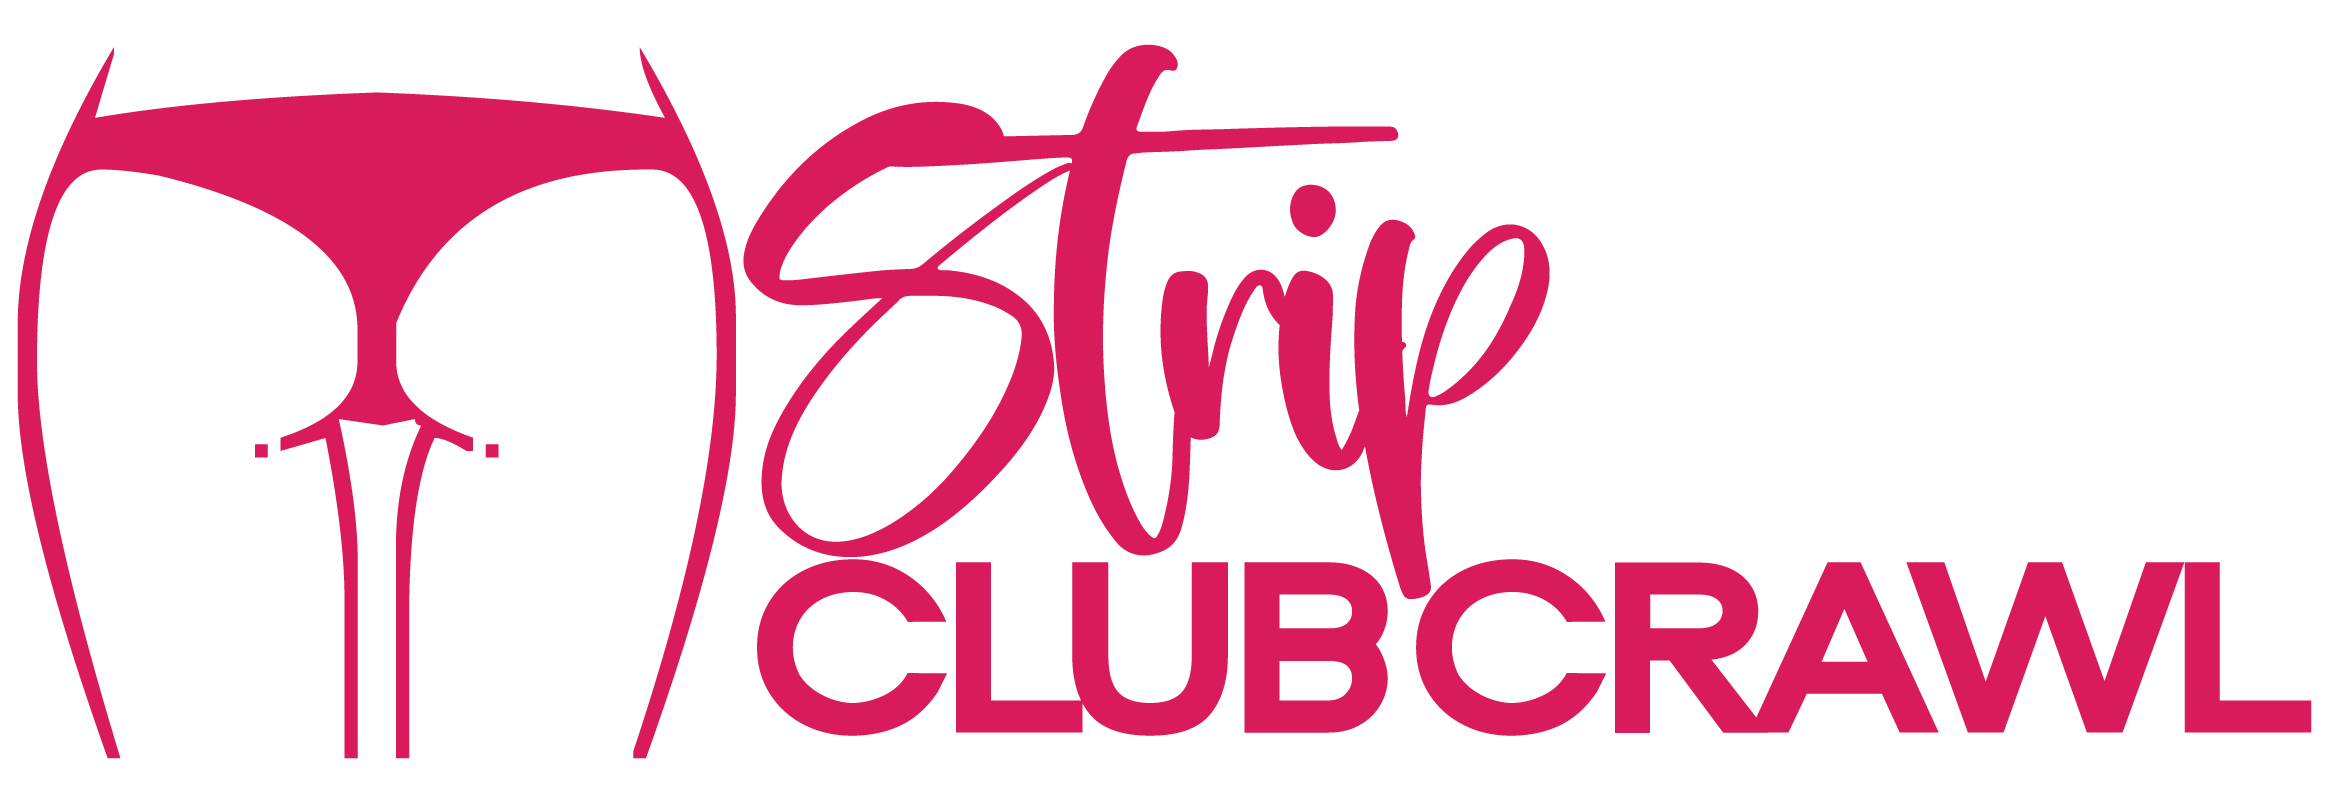 Strip Club Crawl logo